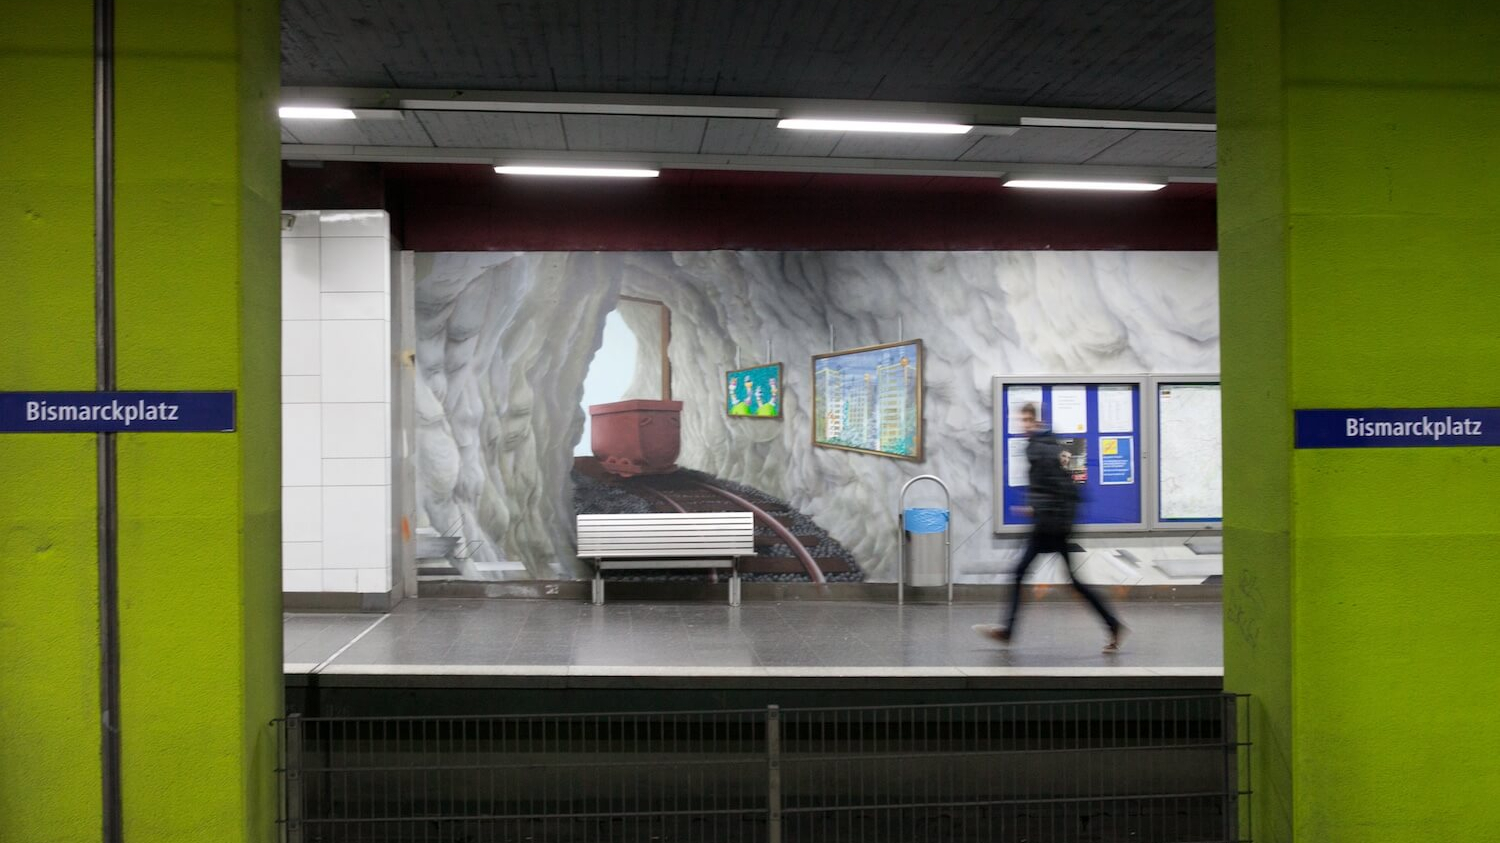 Im U-Bahn-Bereich der Haltestelle Essen-Bismarckplatz sieht man zwischen grüngestrichenen Wänden ein Wandgemälde, das Schienen und Wagons in einem Bergwerk darstellen.